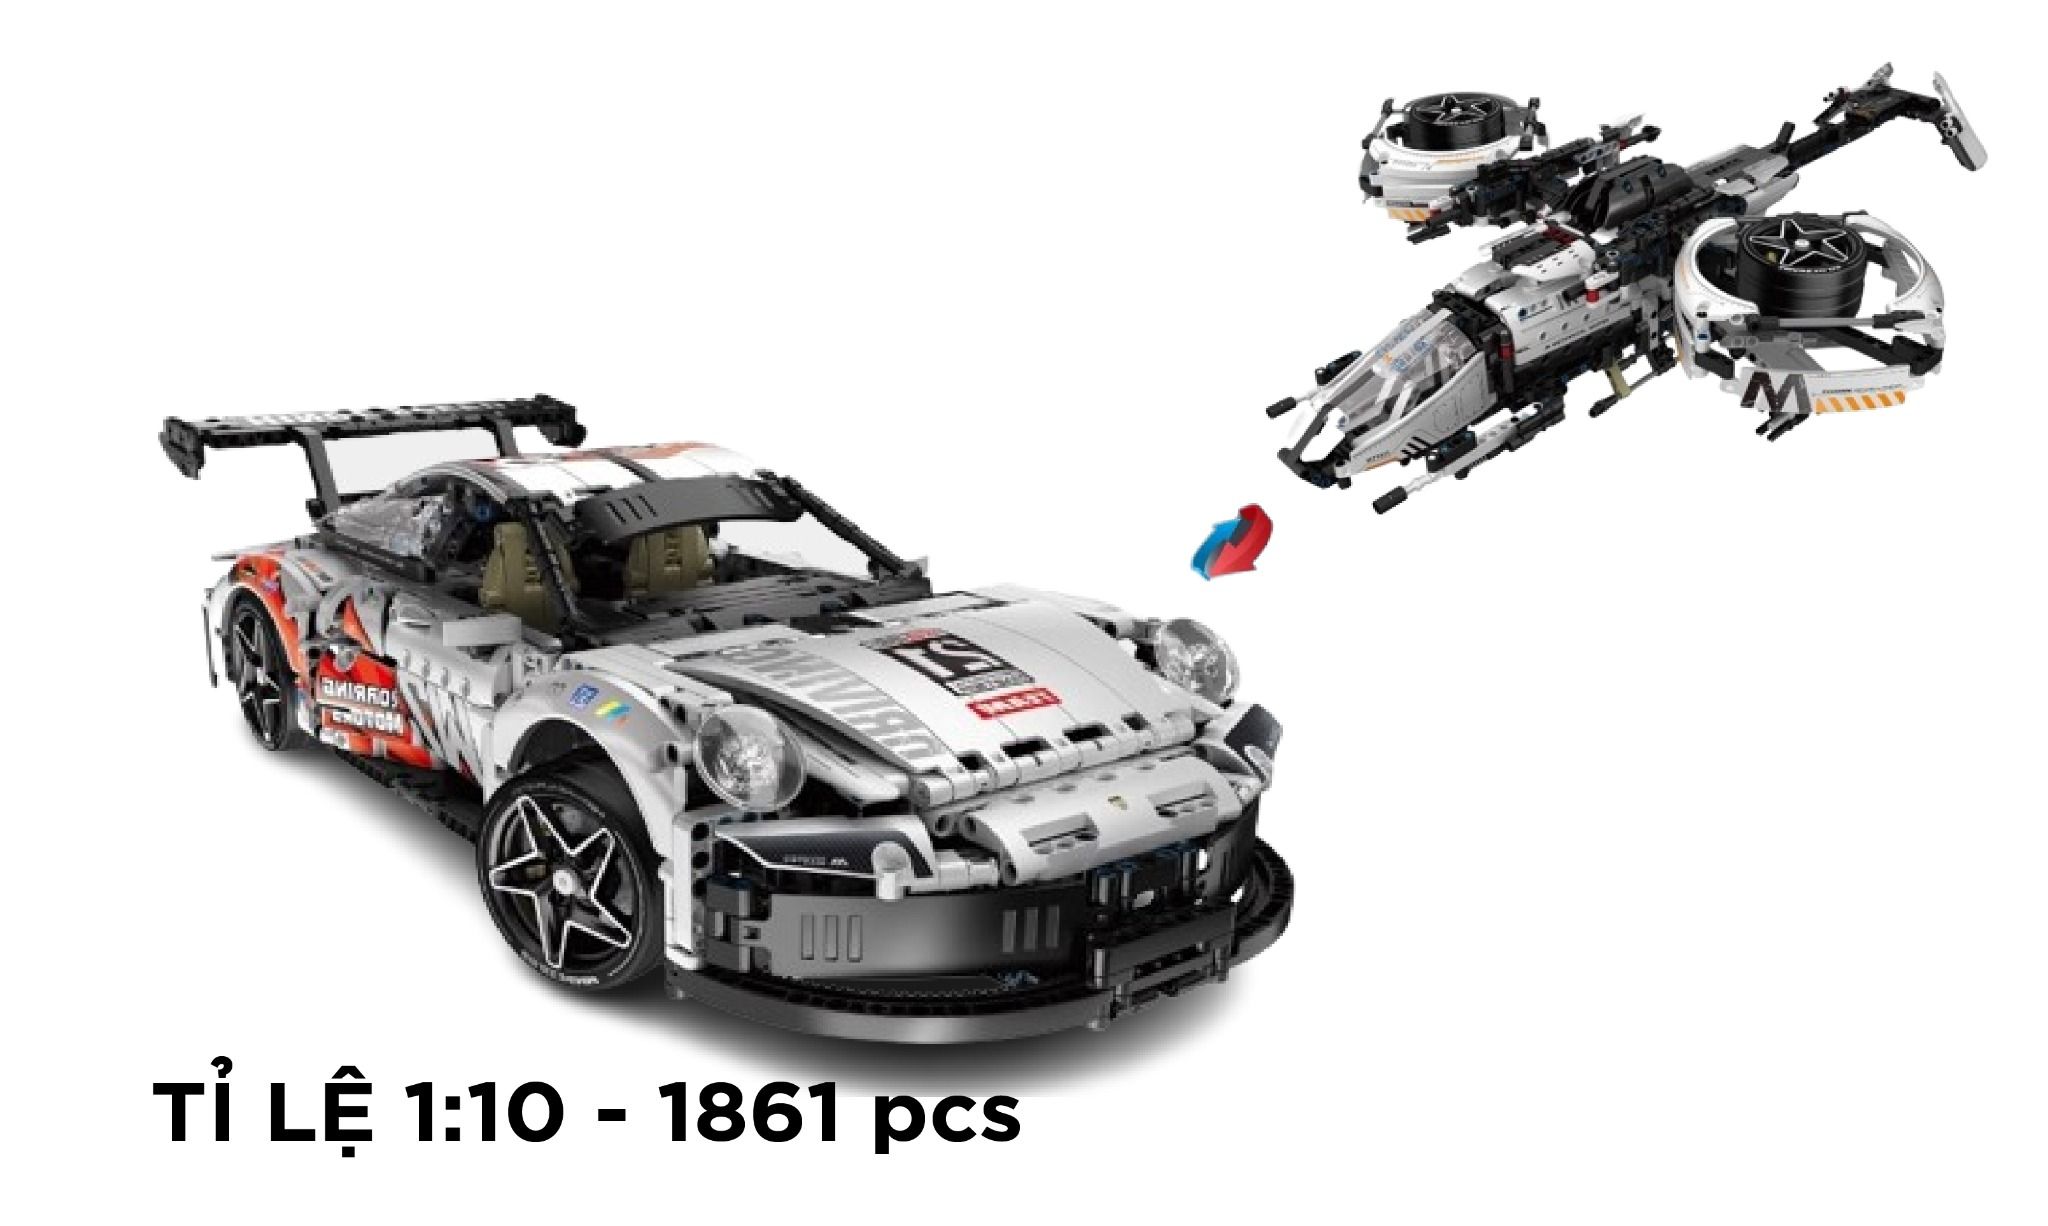  Mô hình xe ô tô lắp ghép Porsche 911 chuyển đổi 2 dạng máy bay và xe 1861 pcs tỉ lệ 1:10 LG031 